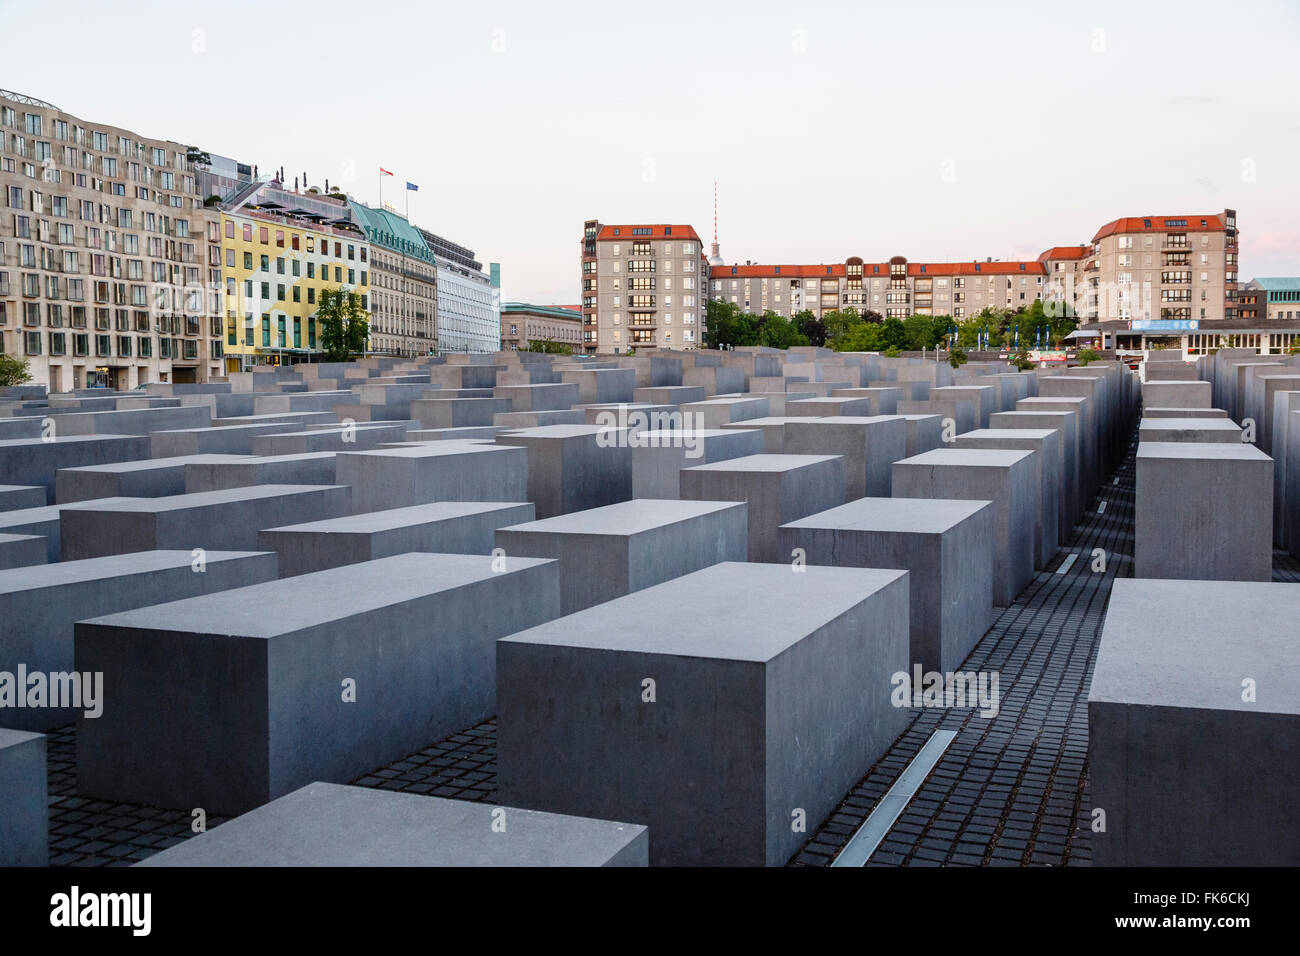 Denkmal für die ermordeten Juden Europas, Berlin, Deutschland, Europa Stockfoto